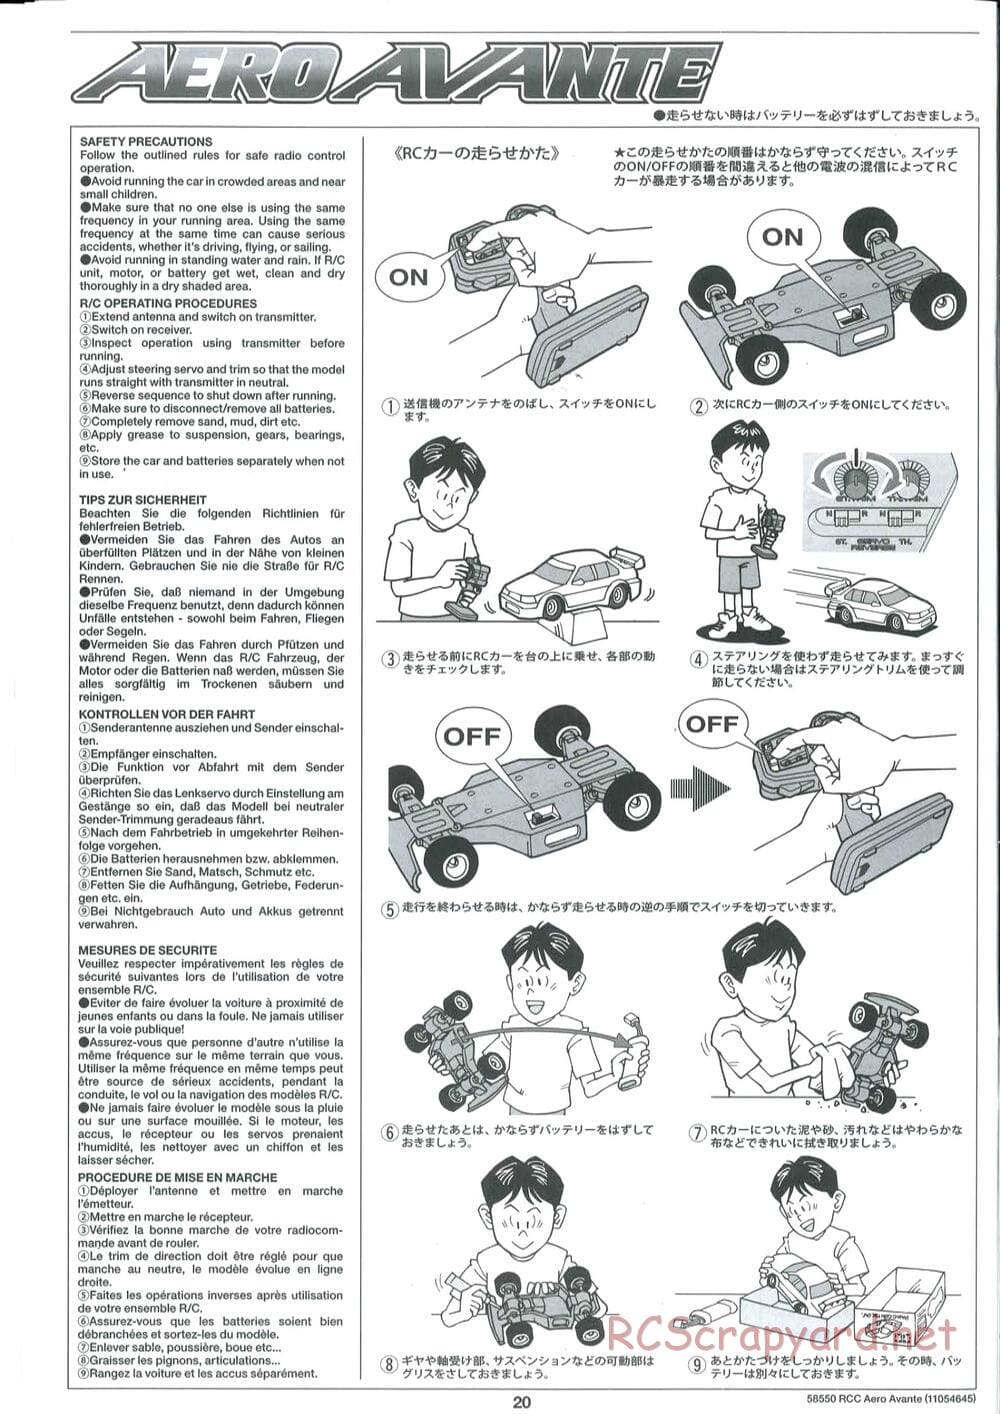 Tamiya - Aero Avante Chassis - Manual - Page 20